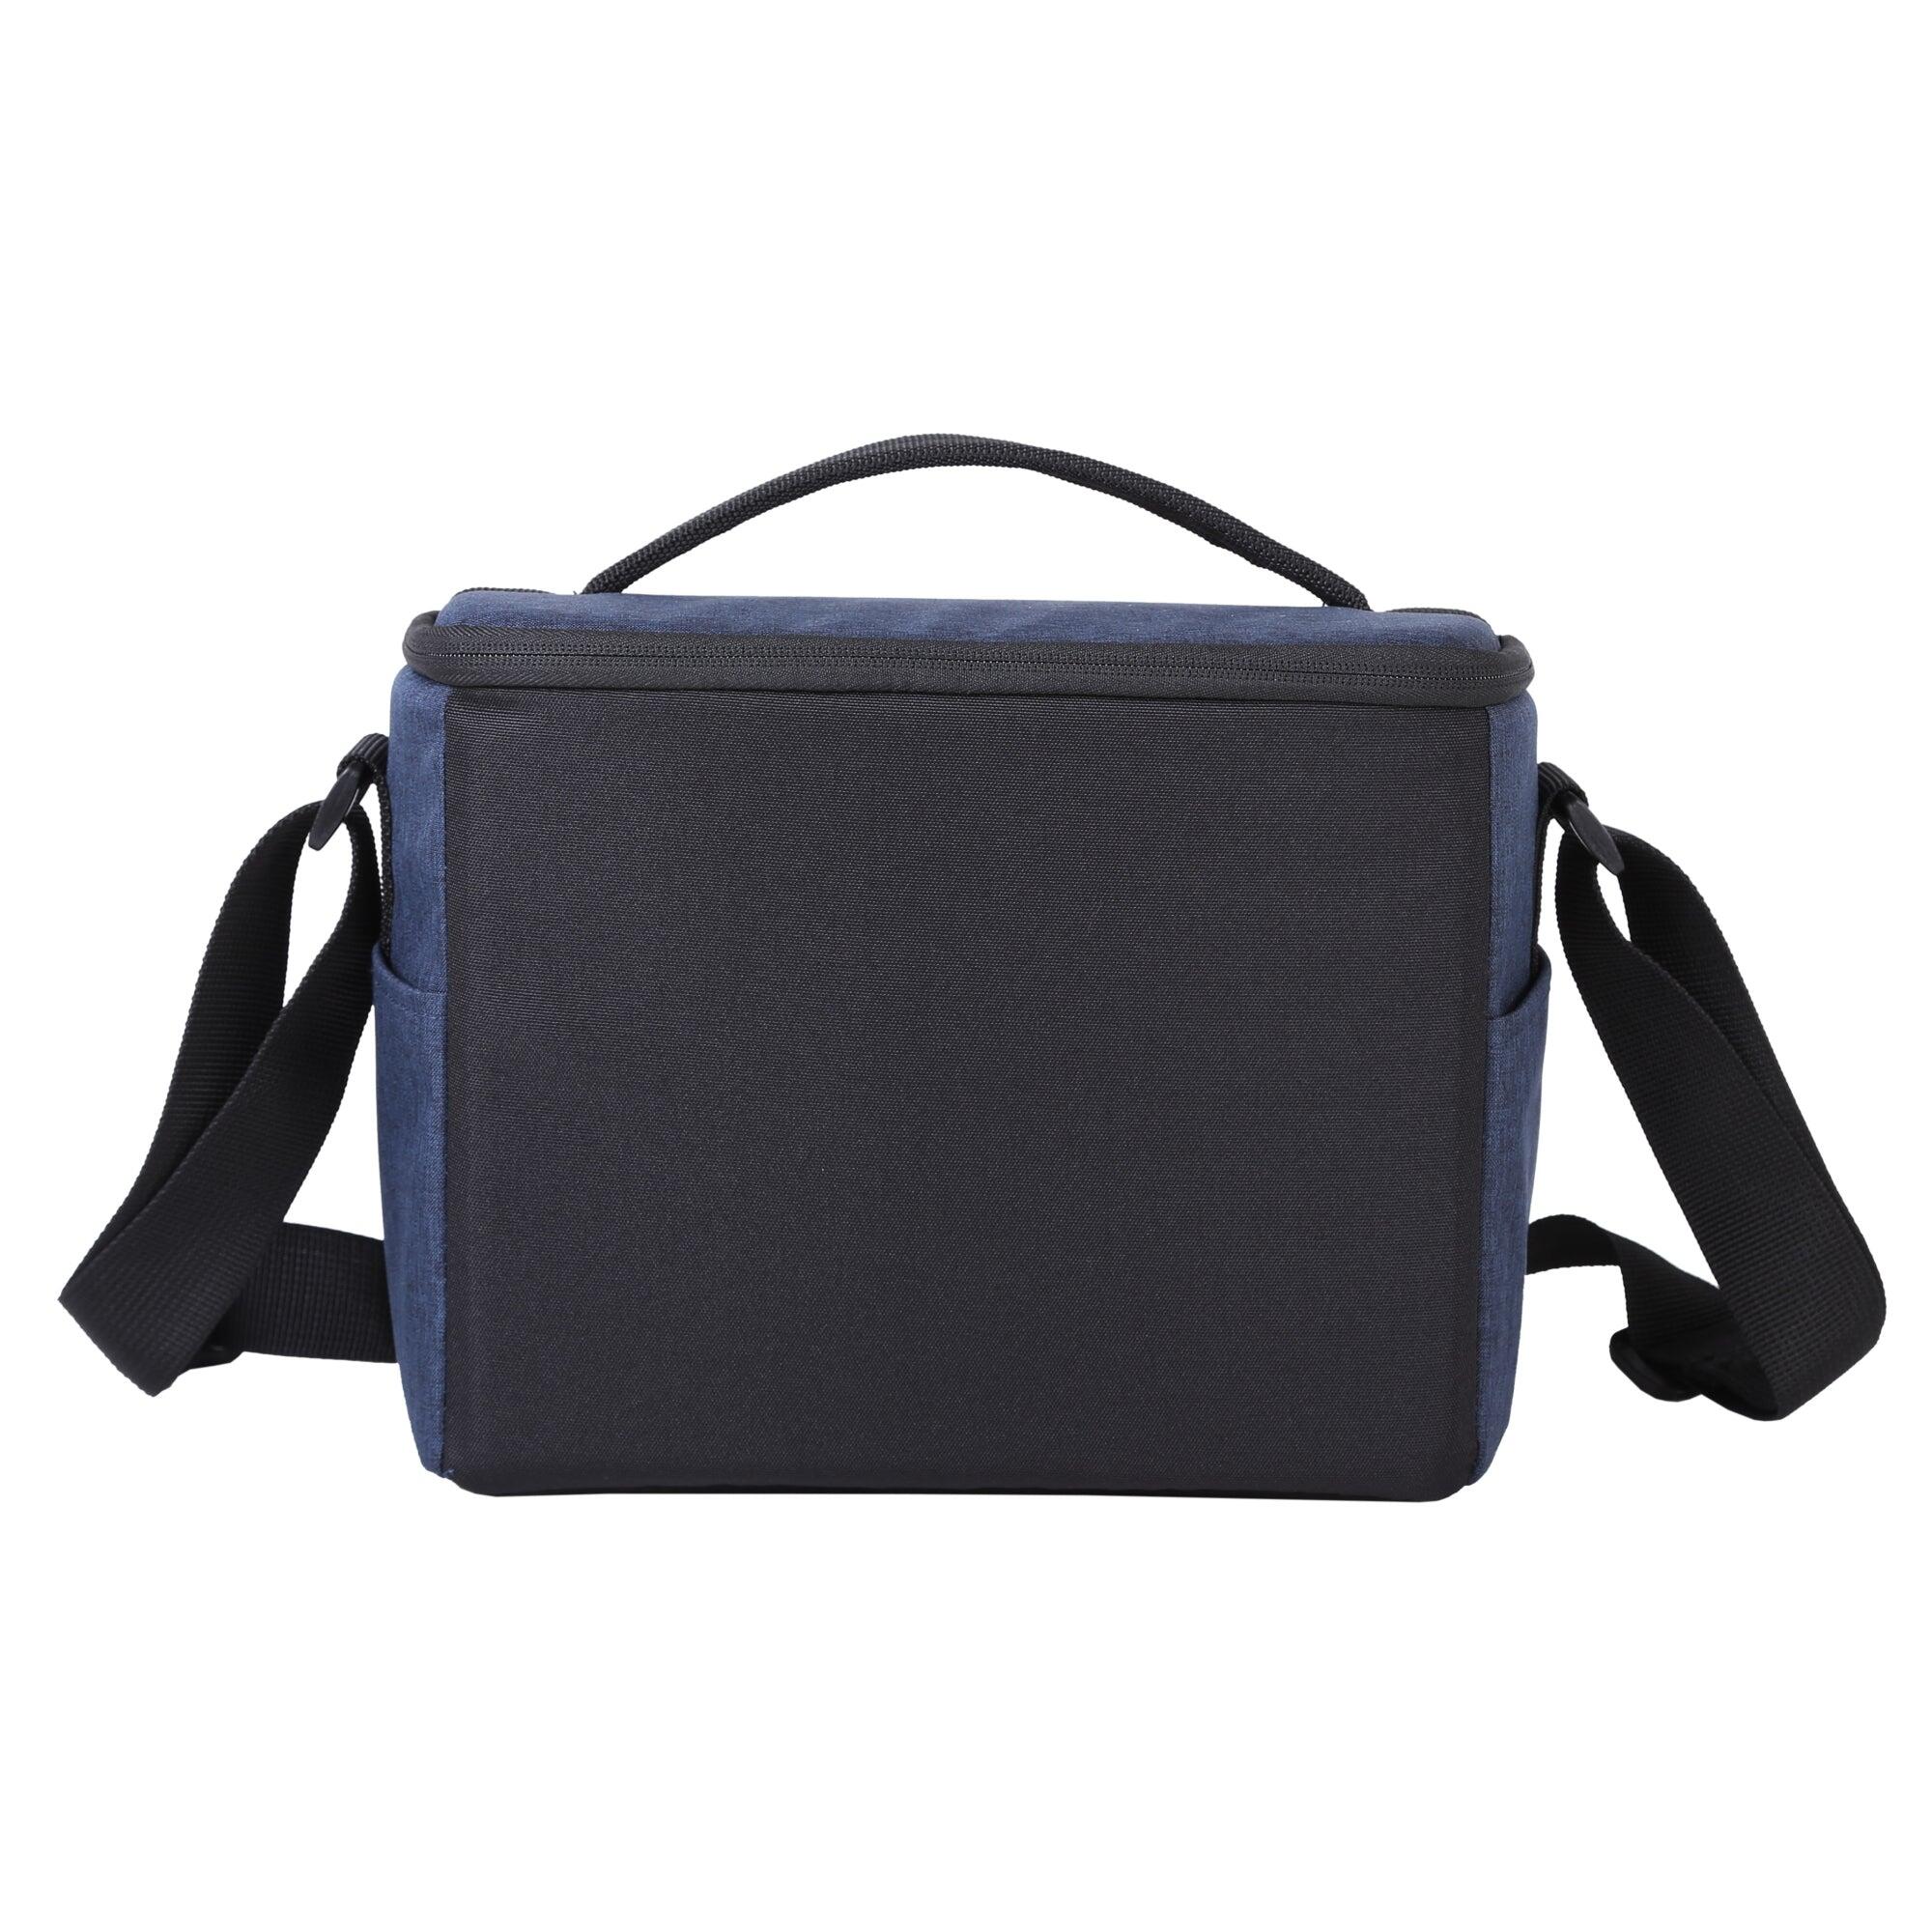 VESTA Aspire 25 NV Shoulder Bag - Blue 5/5